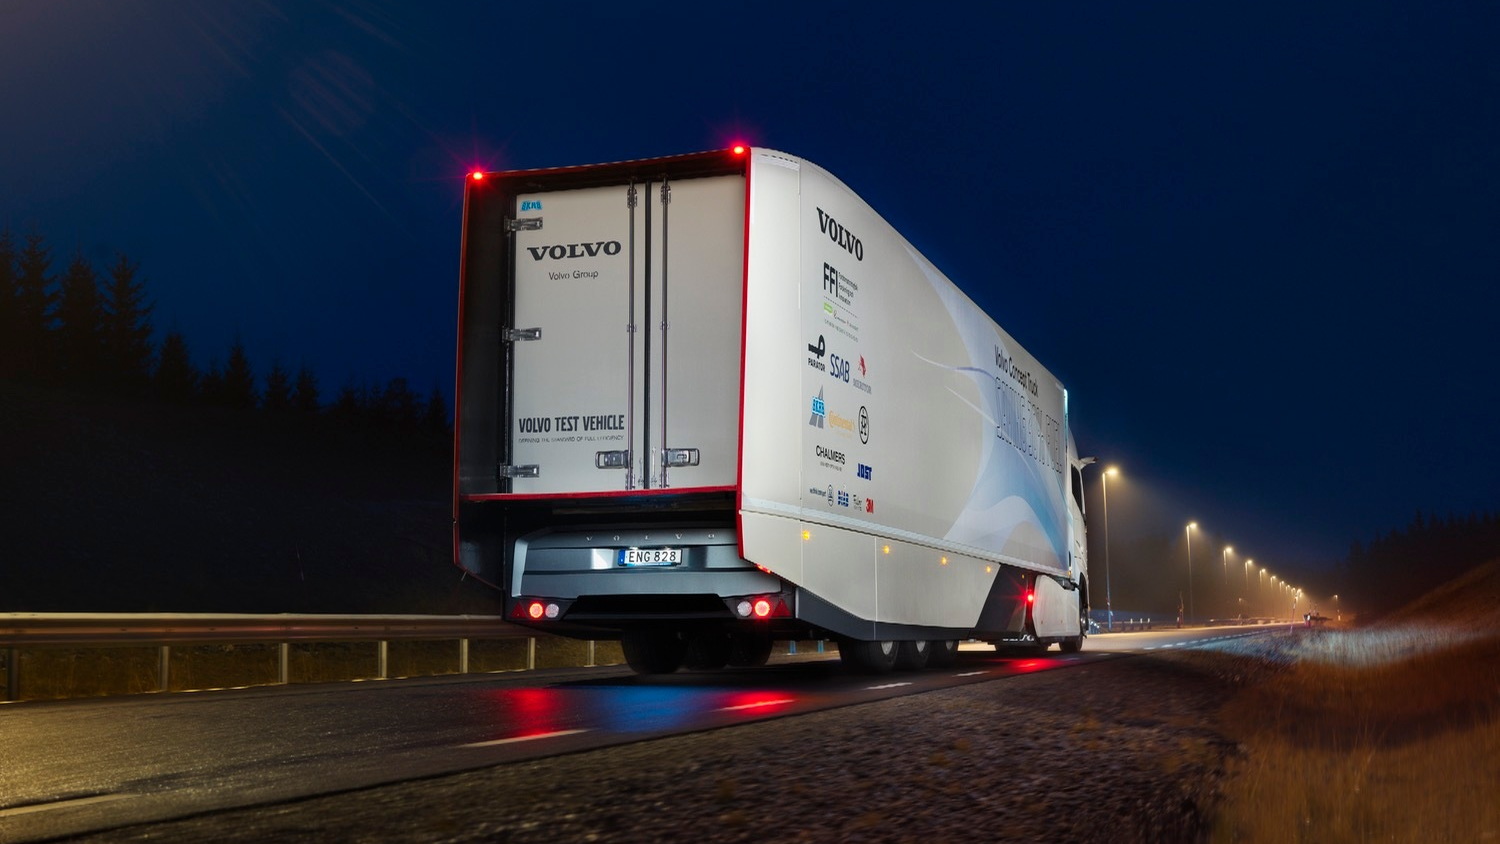 Volvo Concept Truck